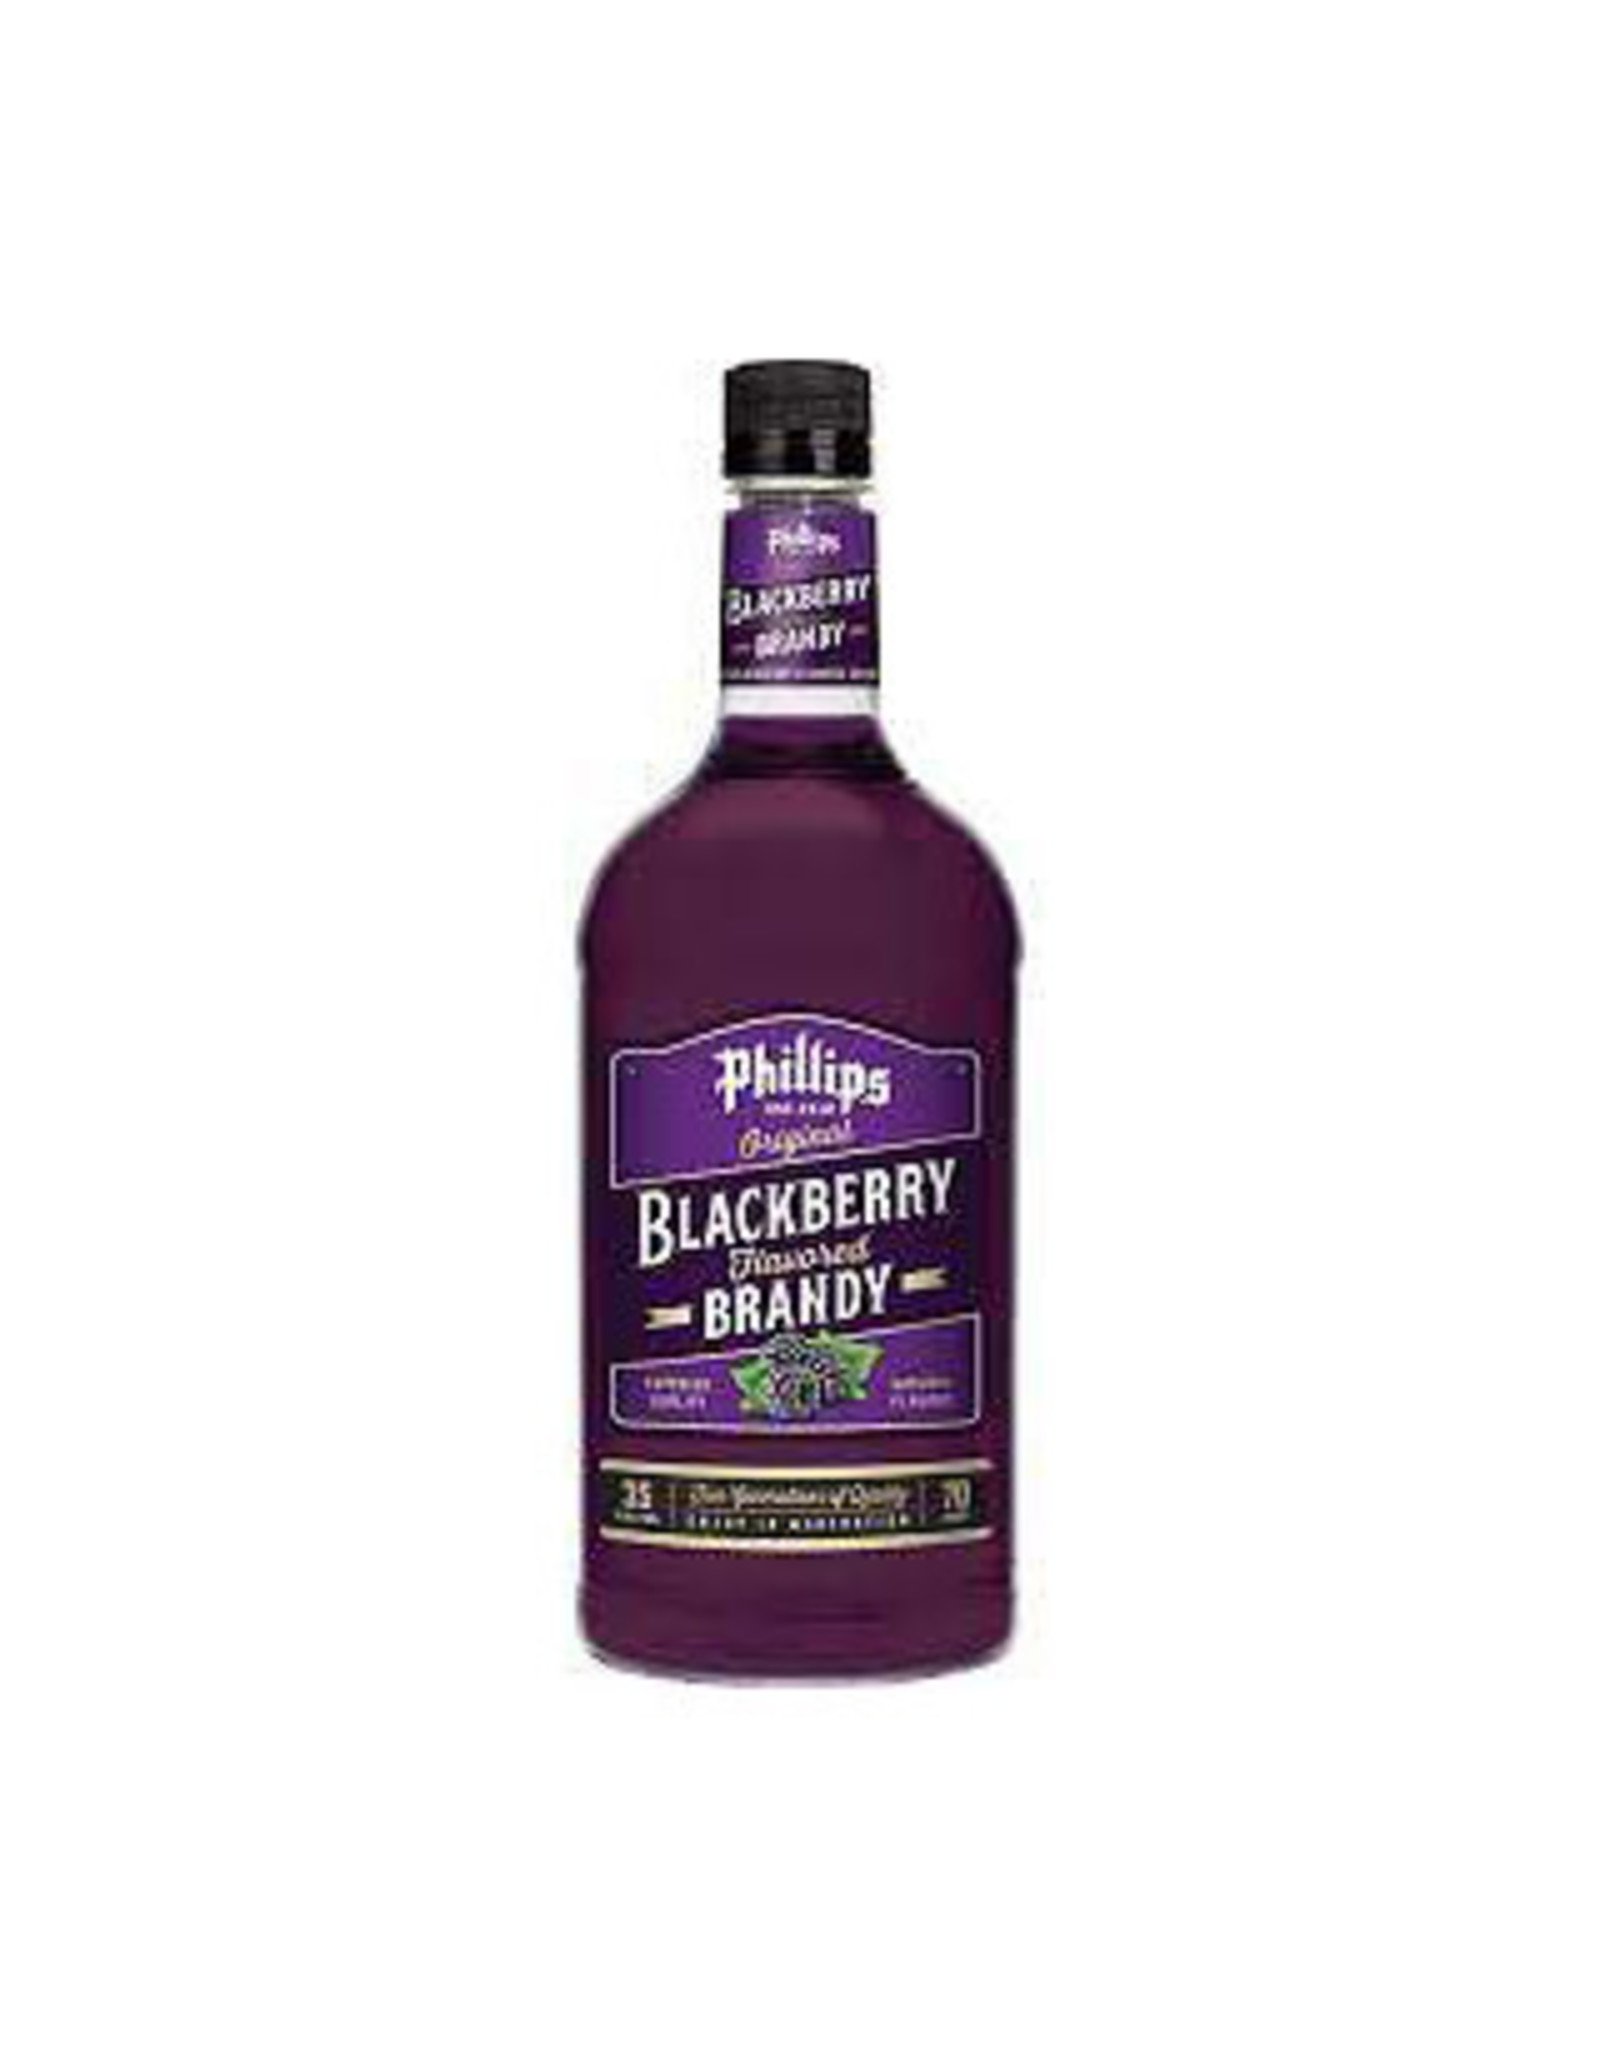 Phillips Blackberry Brandy 1.75